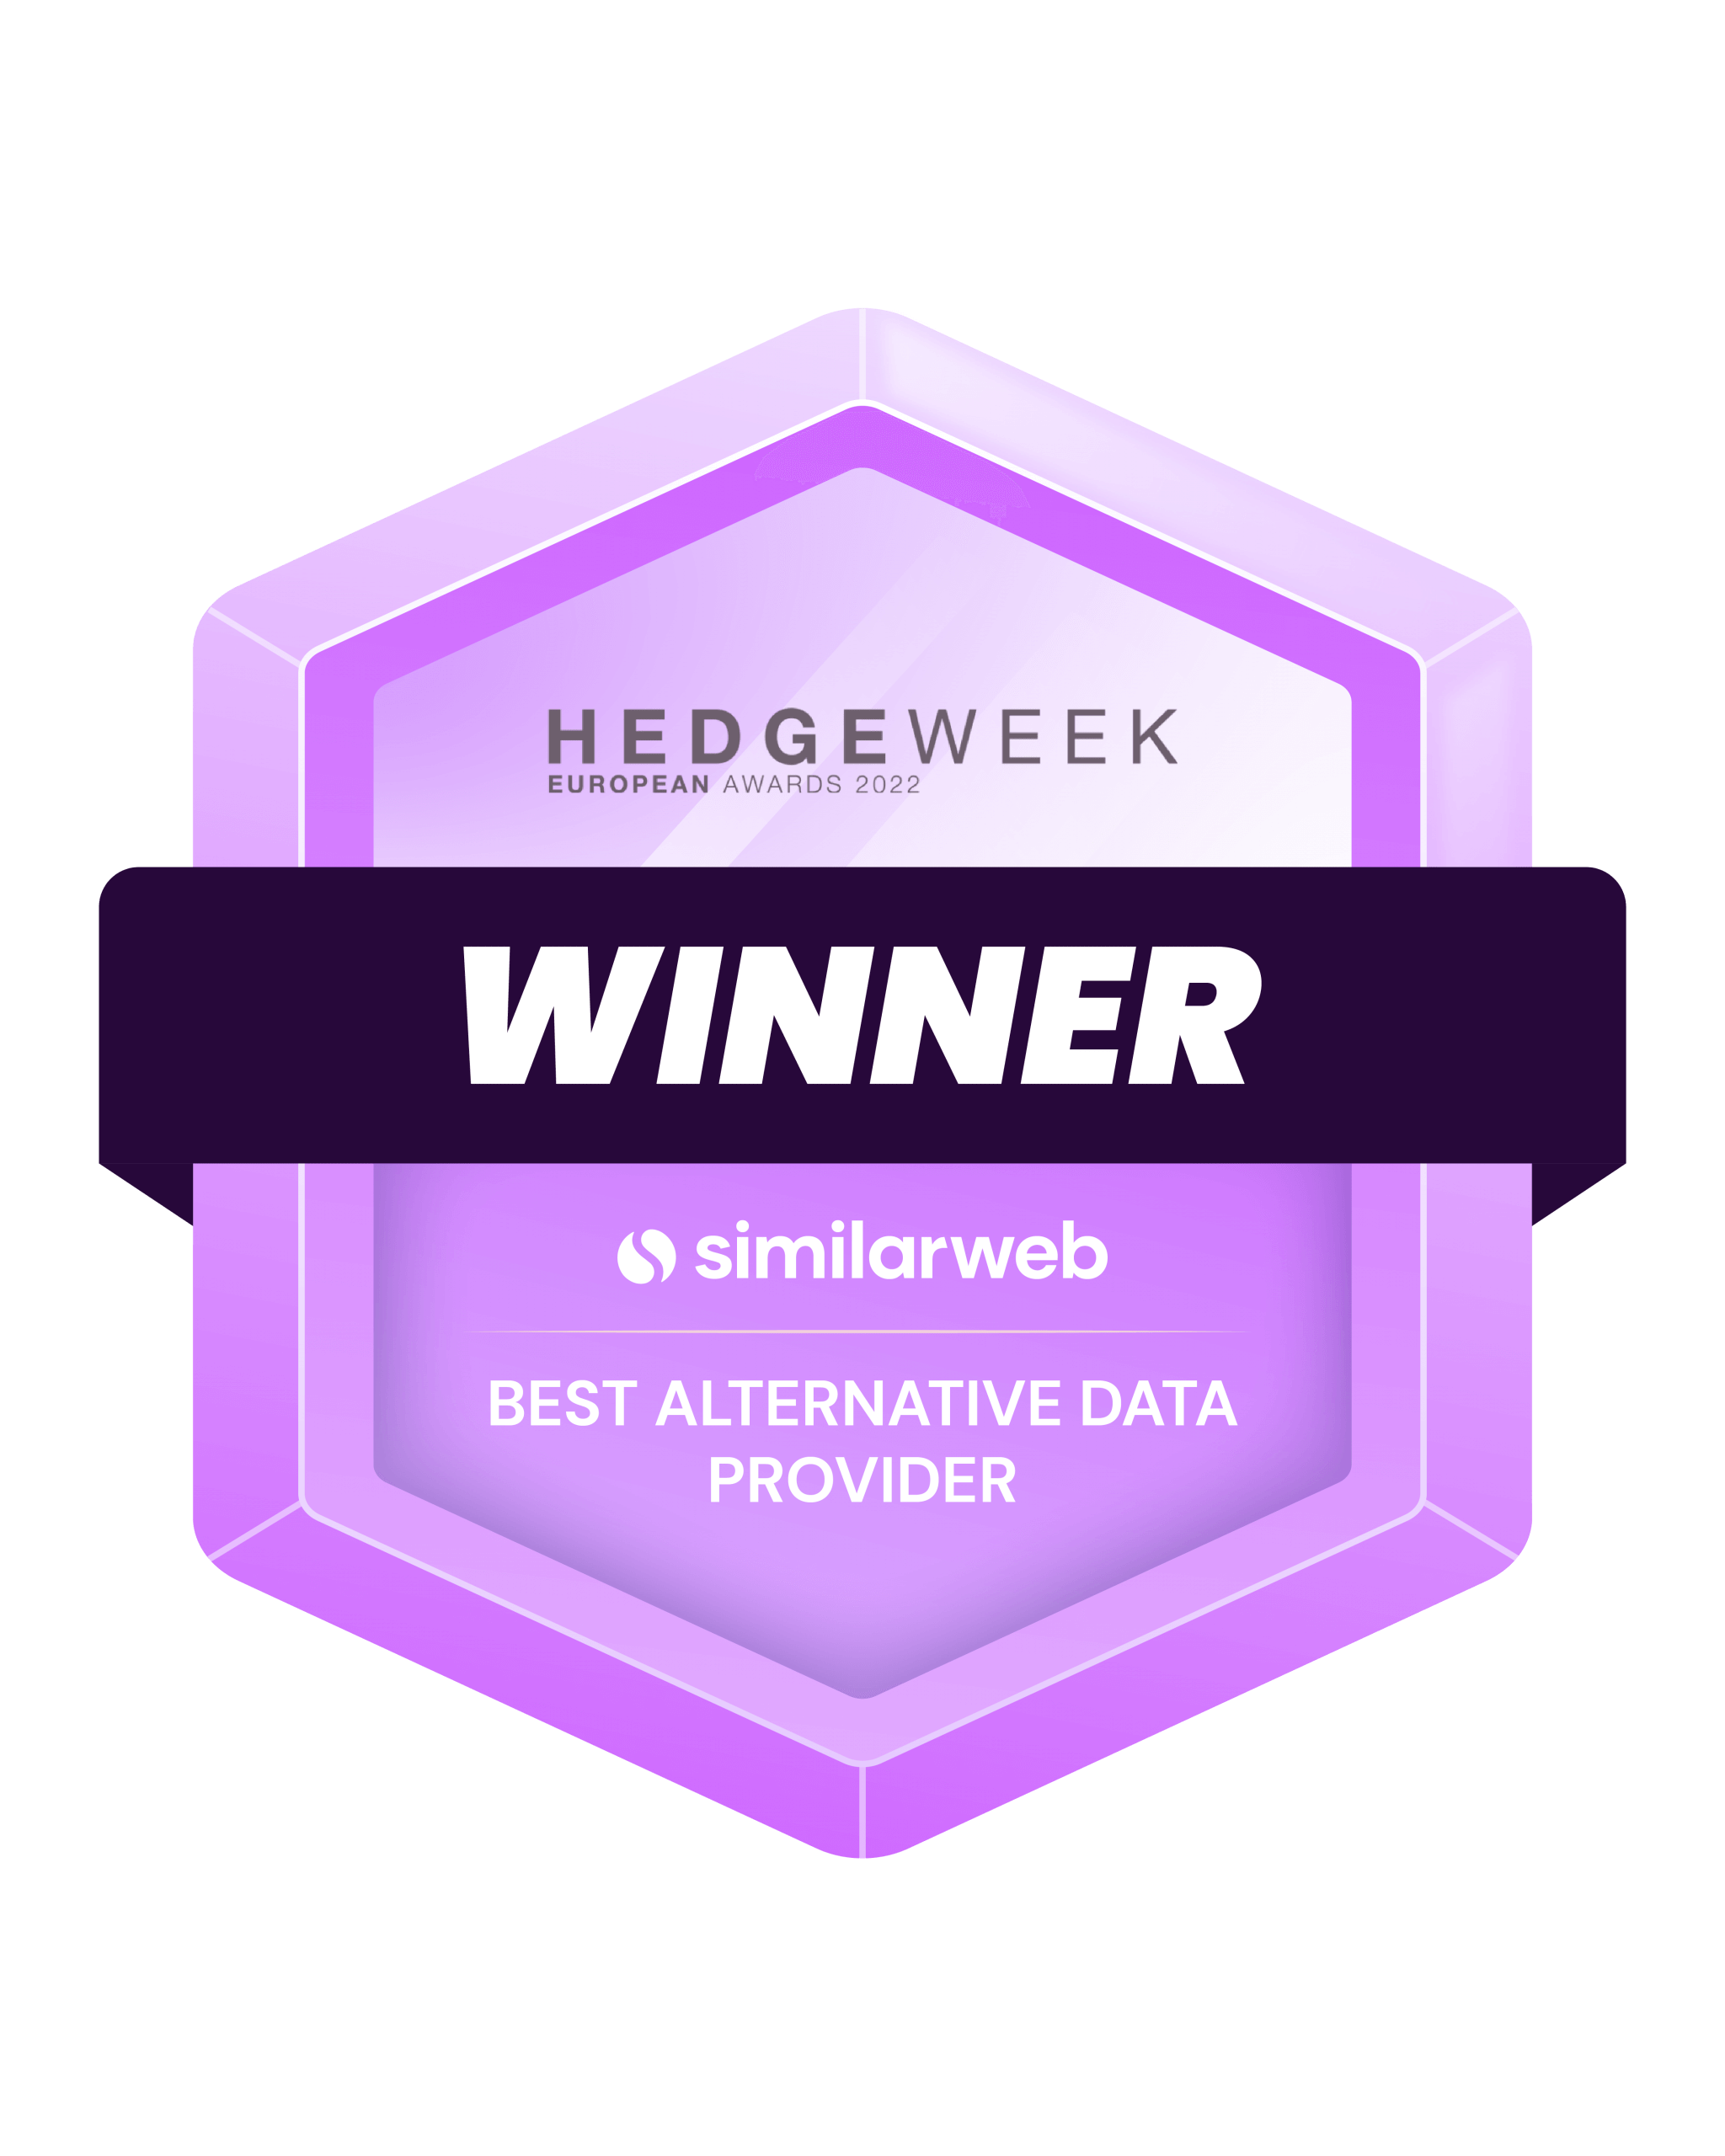 Hedgeweek Winner - Best Alternative Data Provider